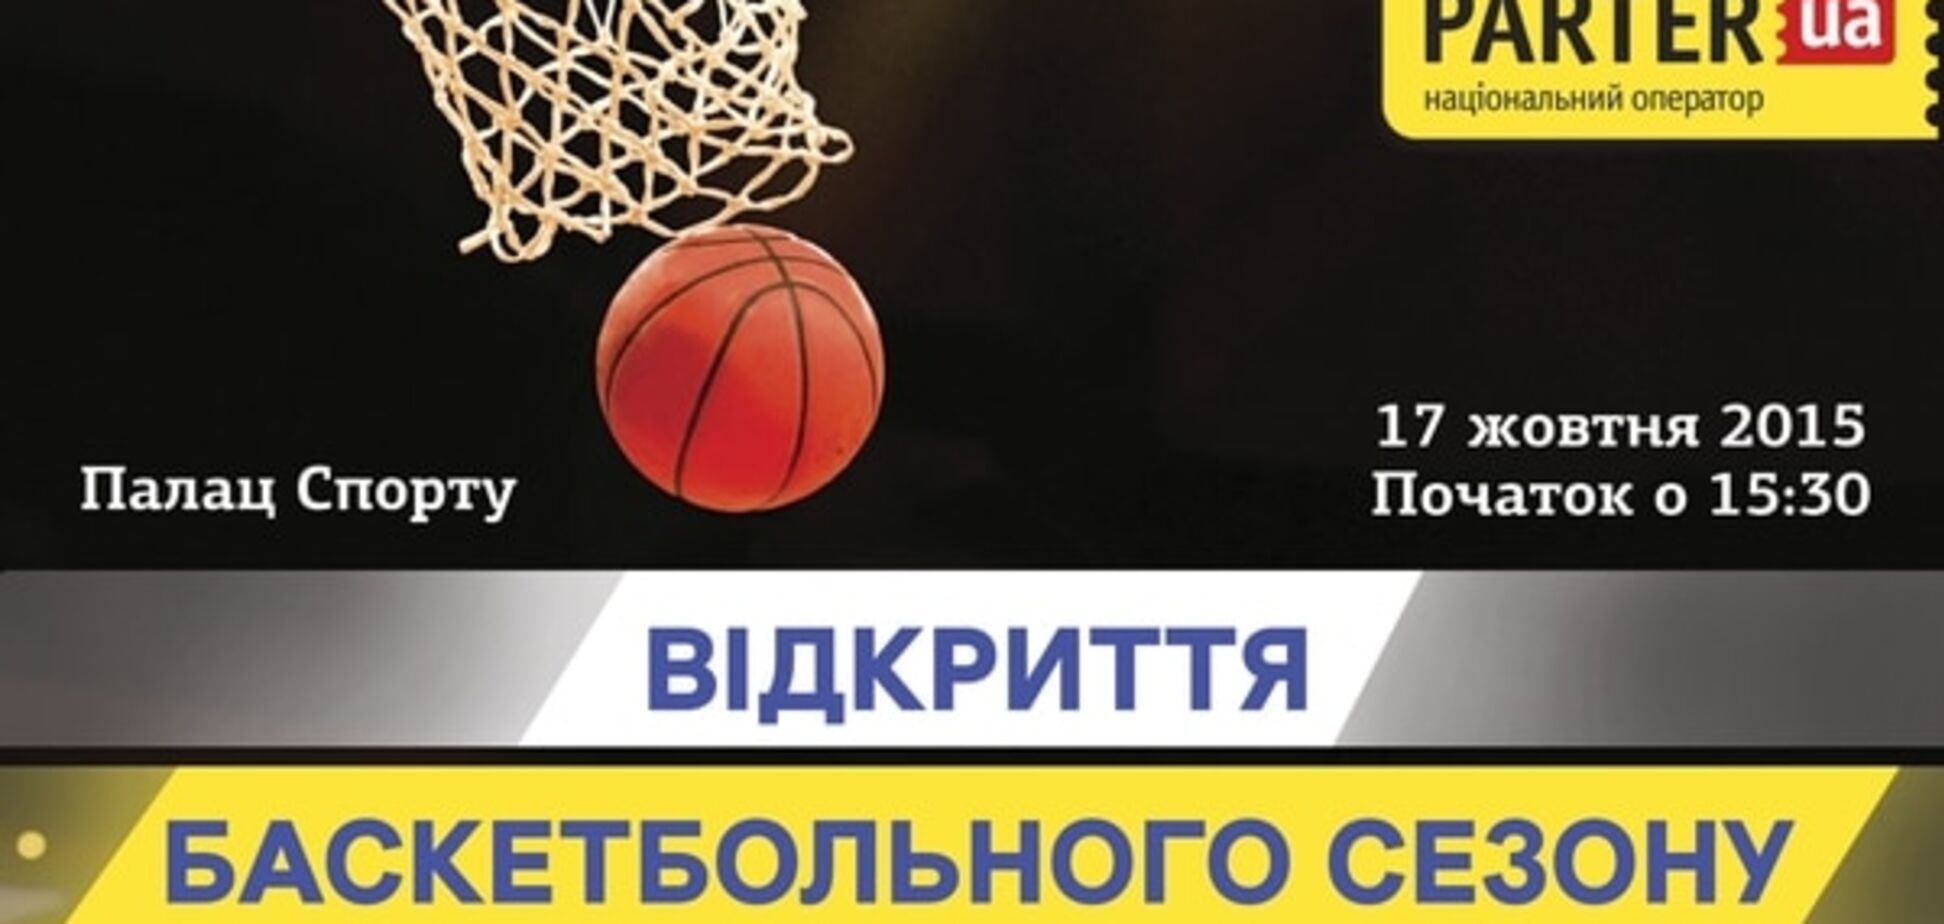 Концерт и баскетбол: ФБУ приглашает на открытие сезона